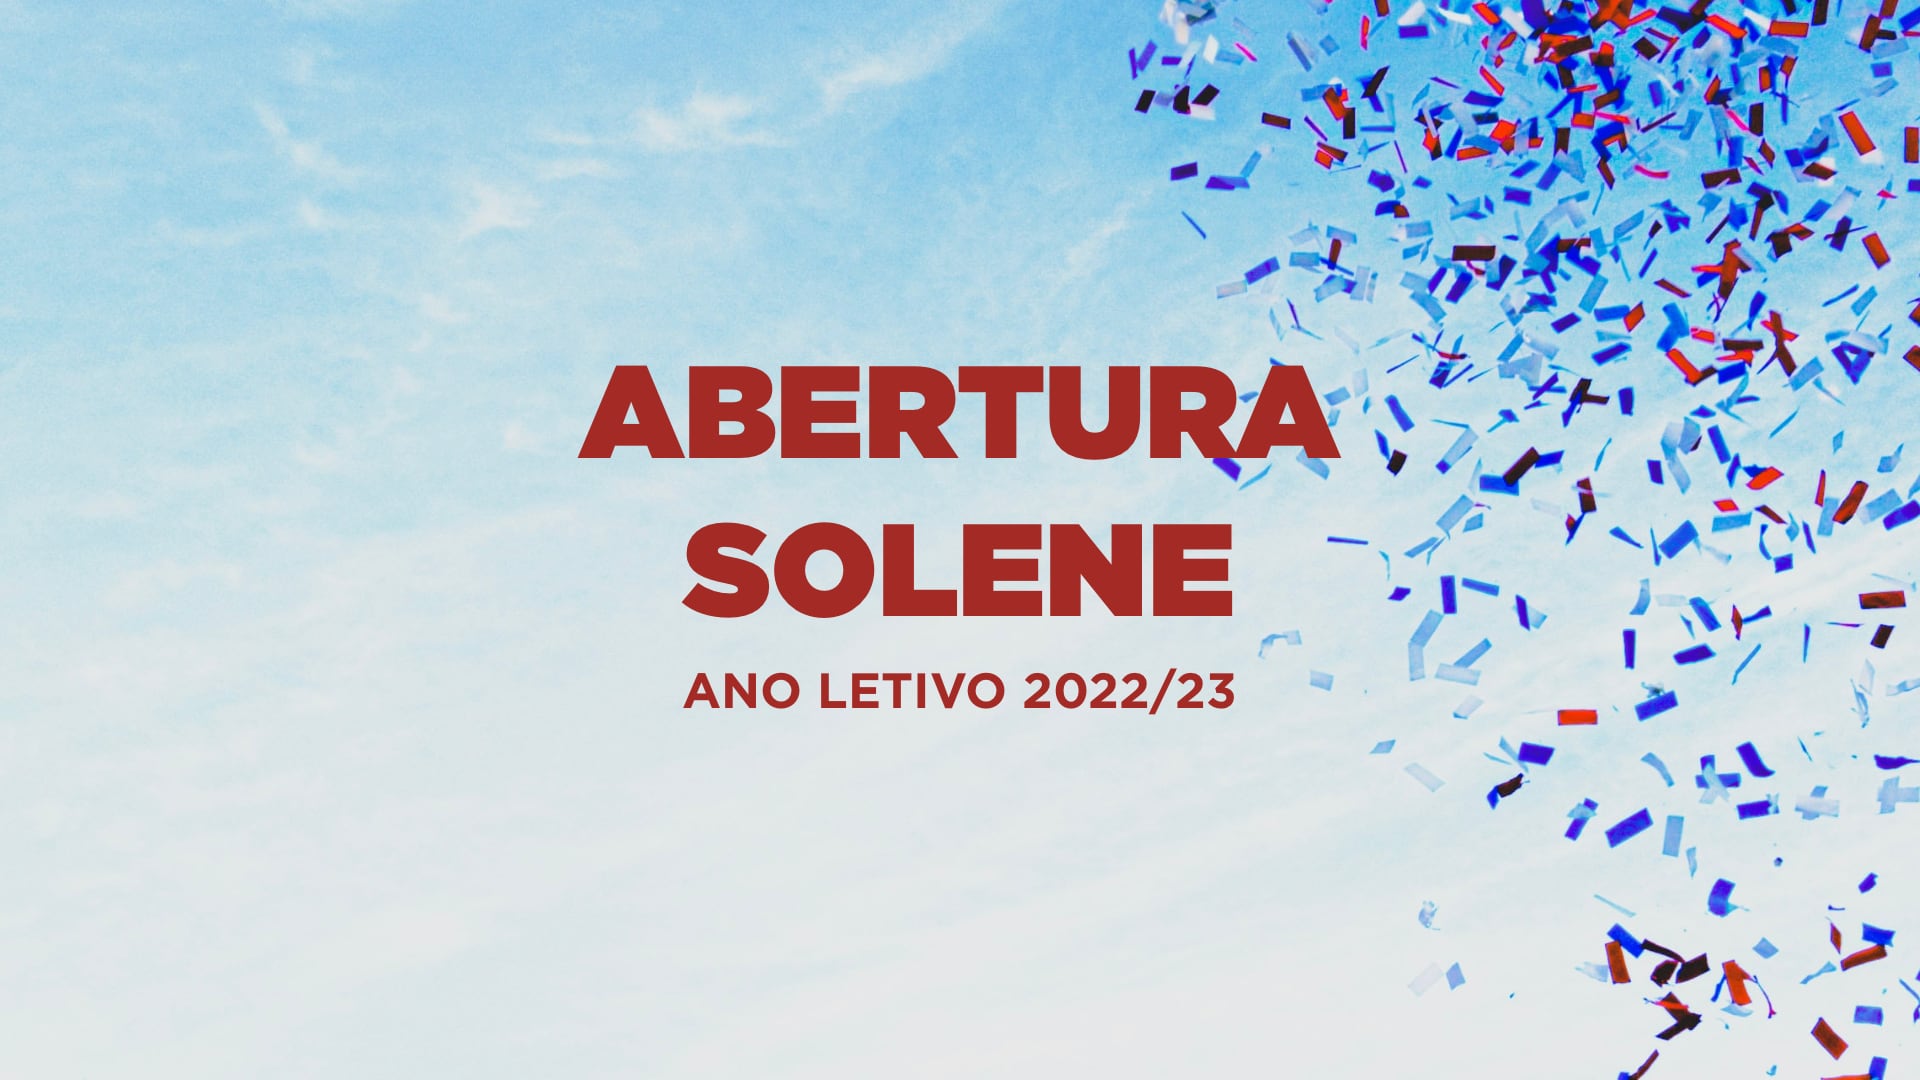 Abertura Solene do Ano Letivo 2022/2023 no Instituto Piaget de Almada